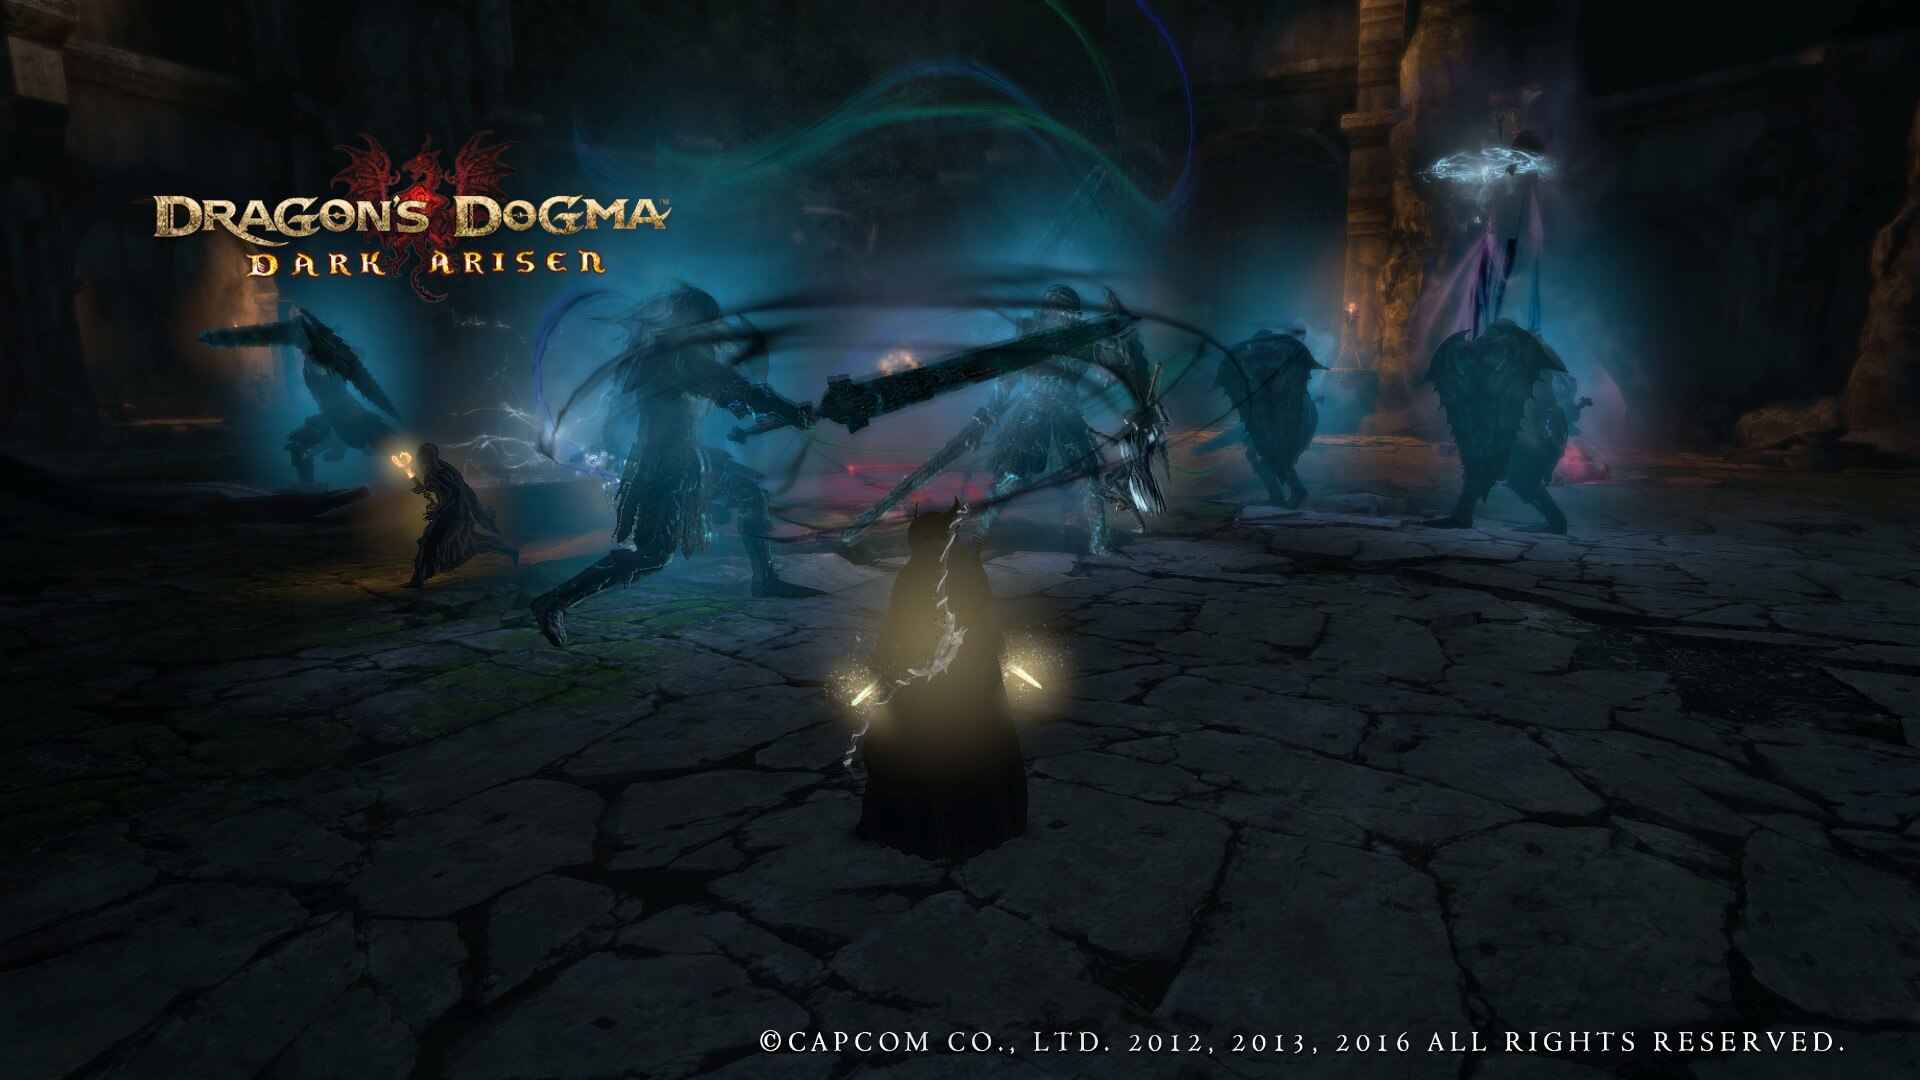 ساخت Dragon's Dogma 2 بعد از 10 سال تایید شد